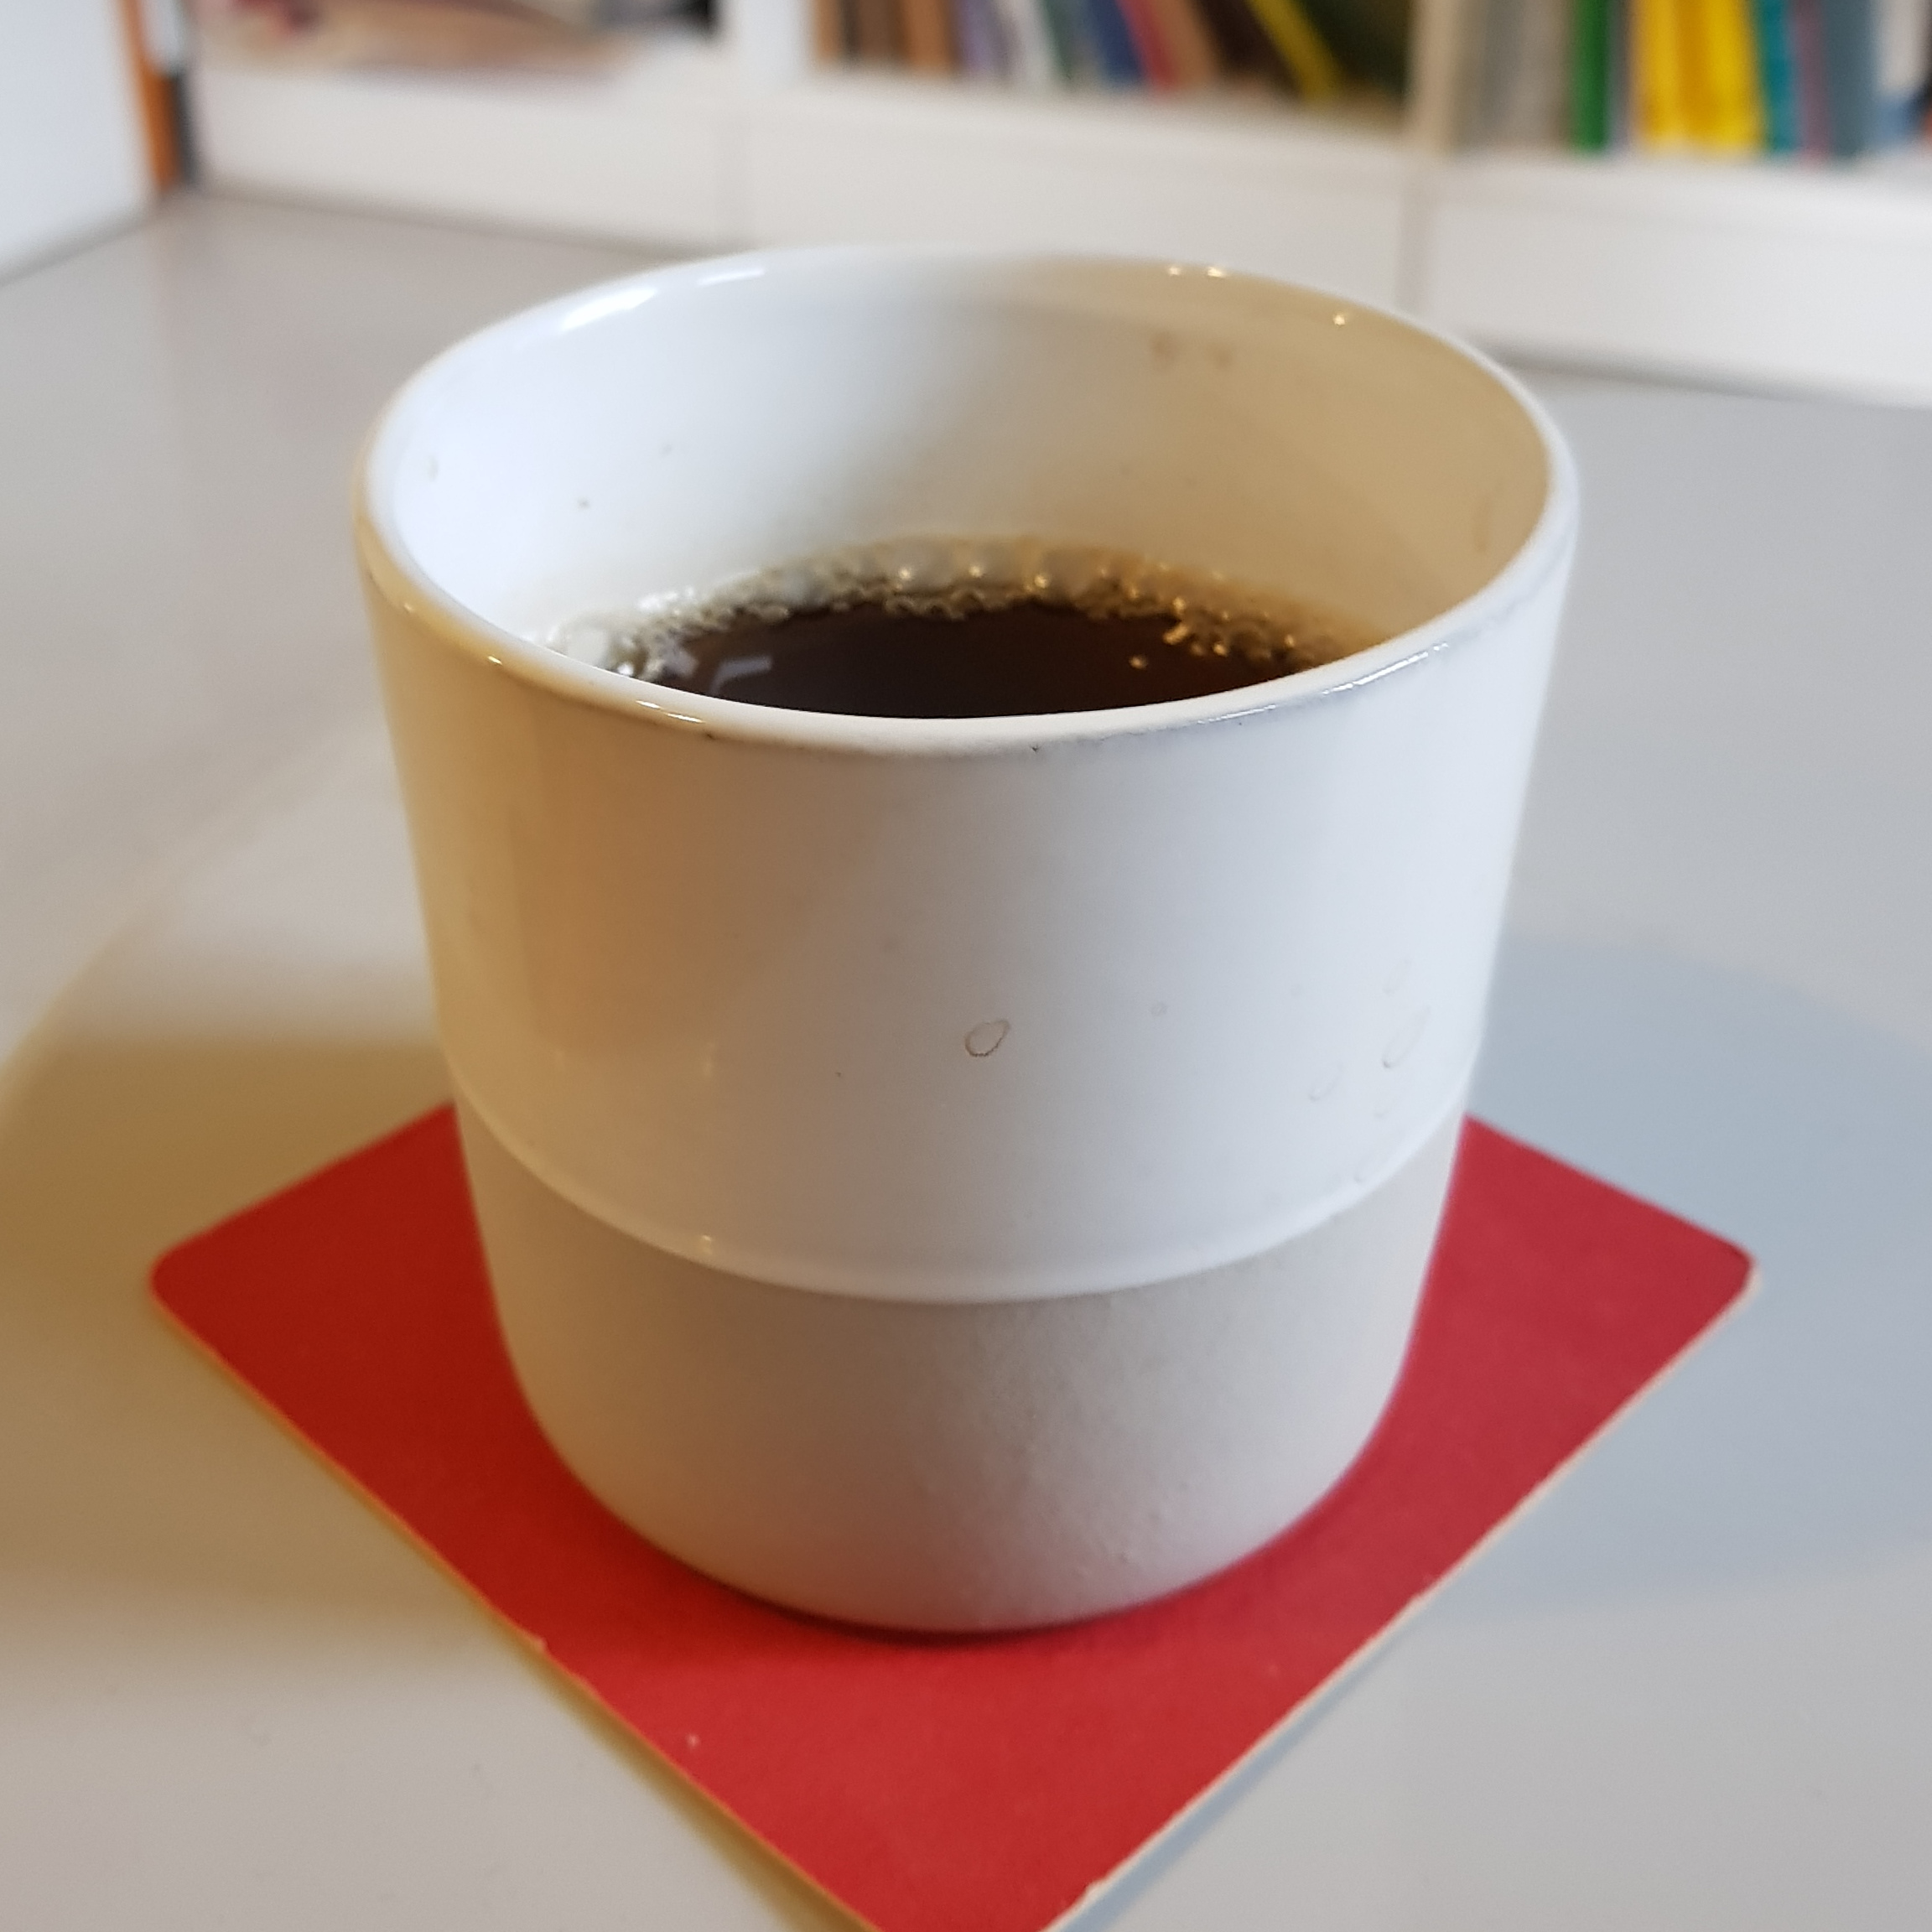 Minimalist tea mug